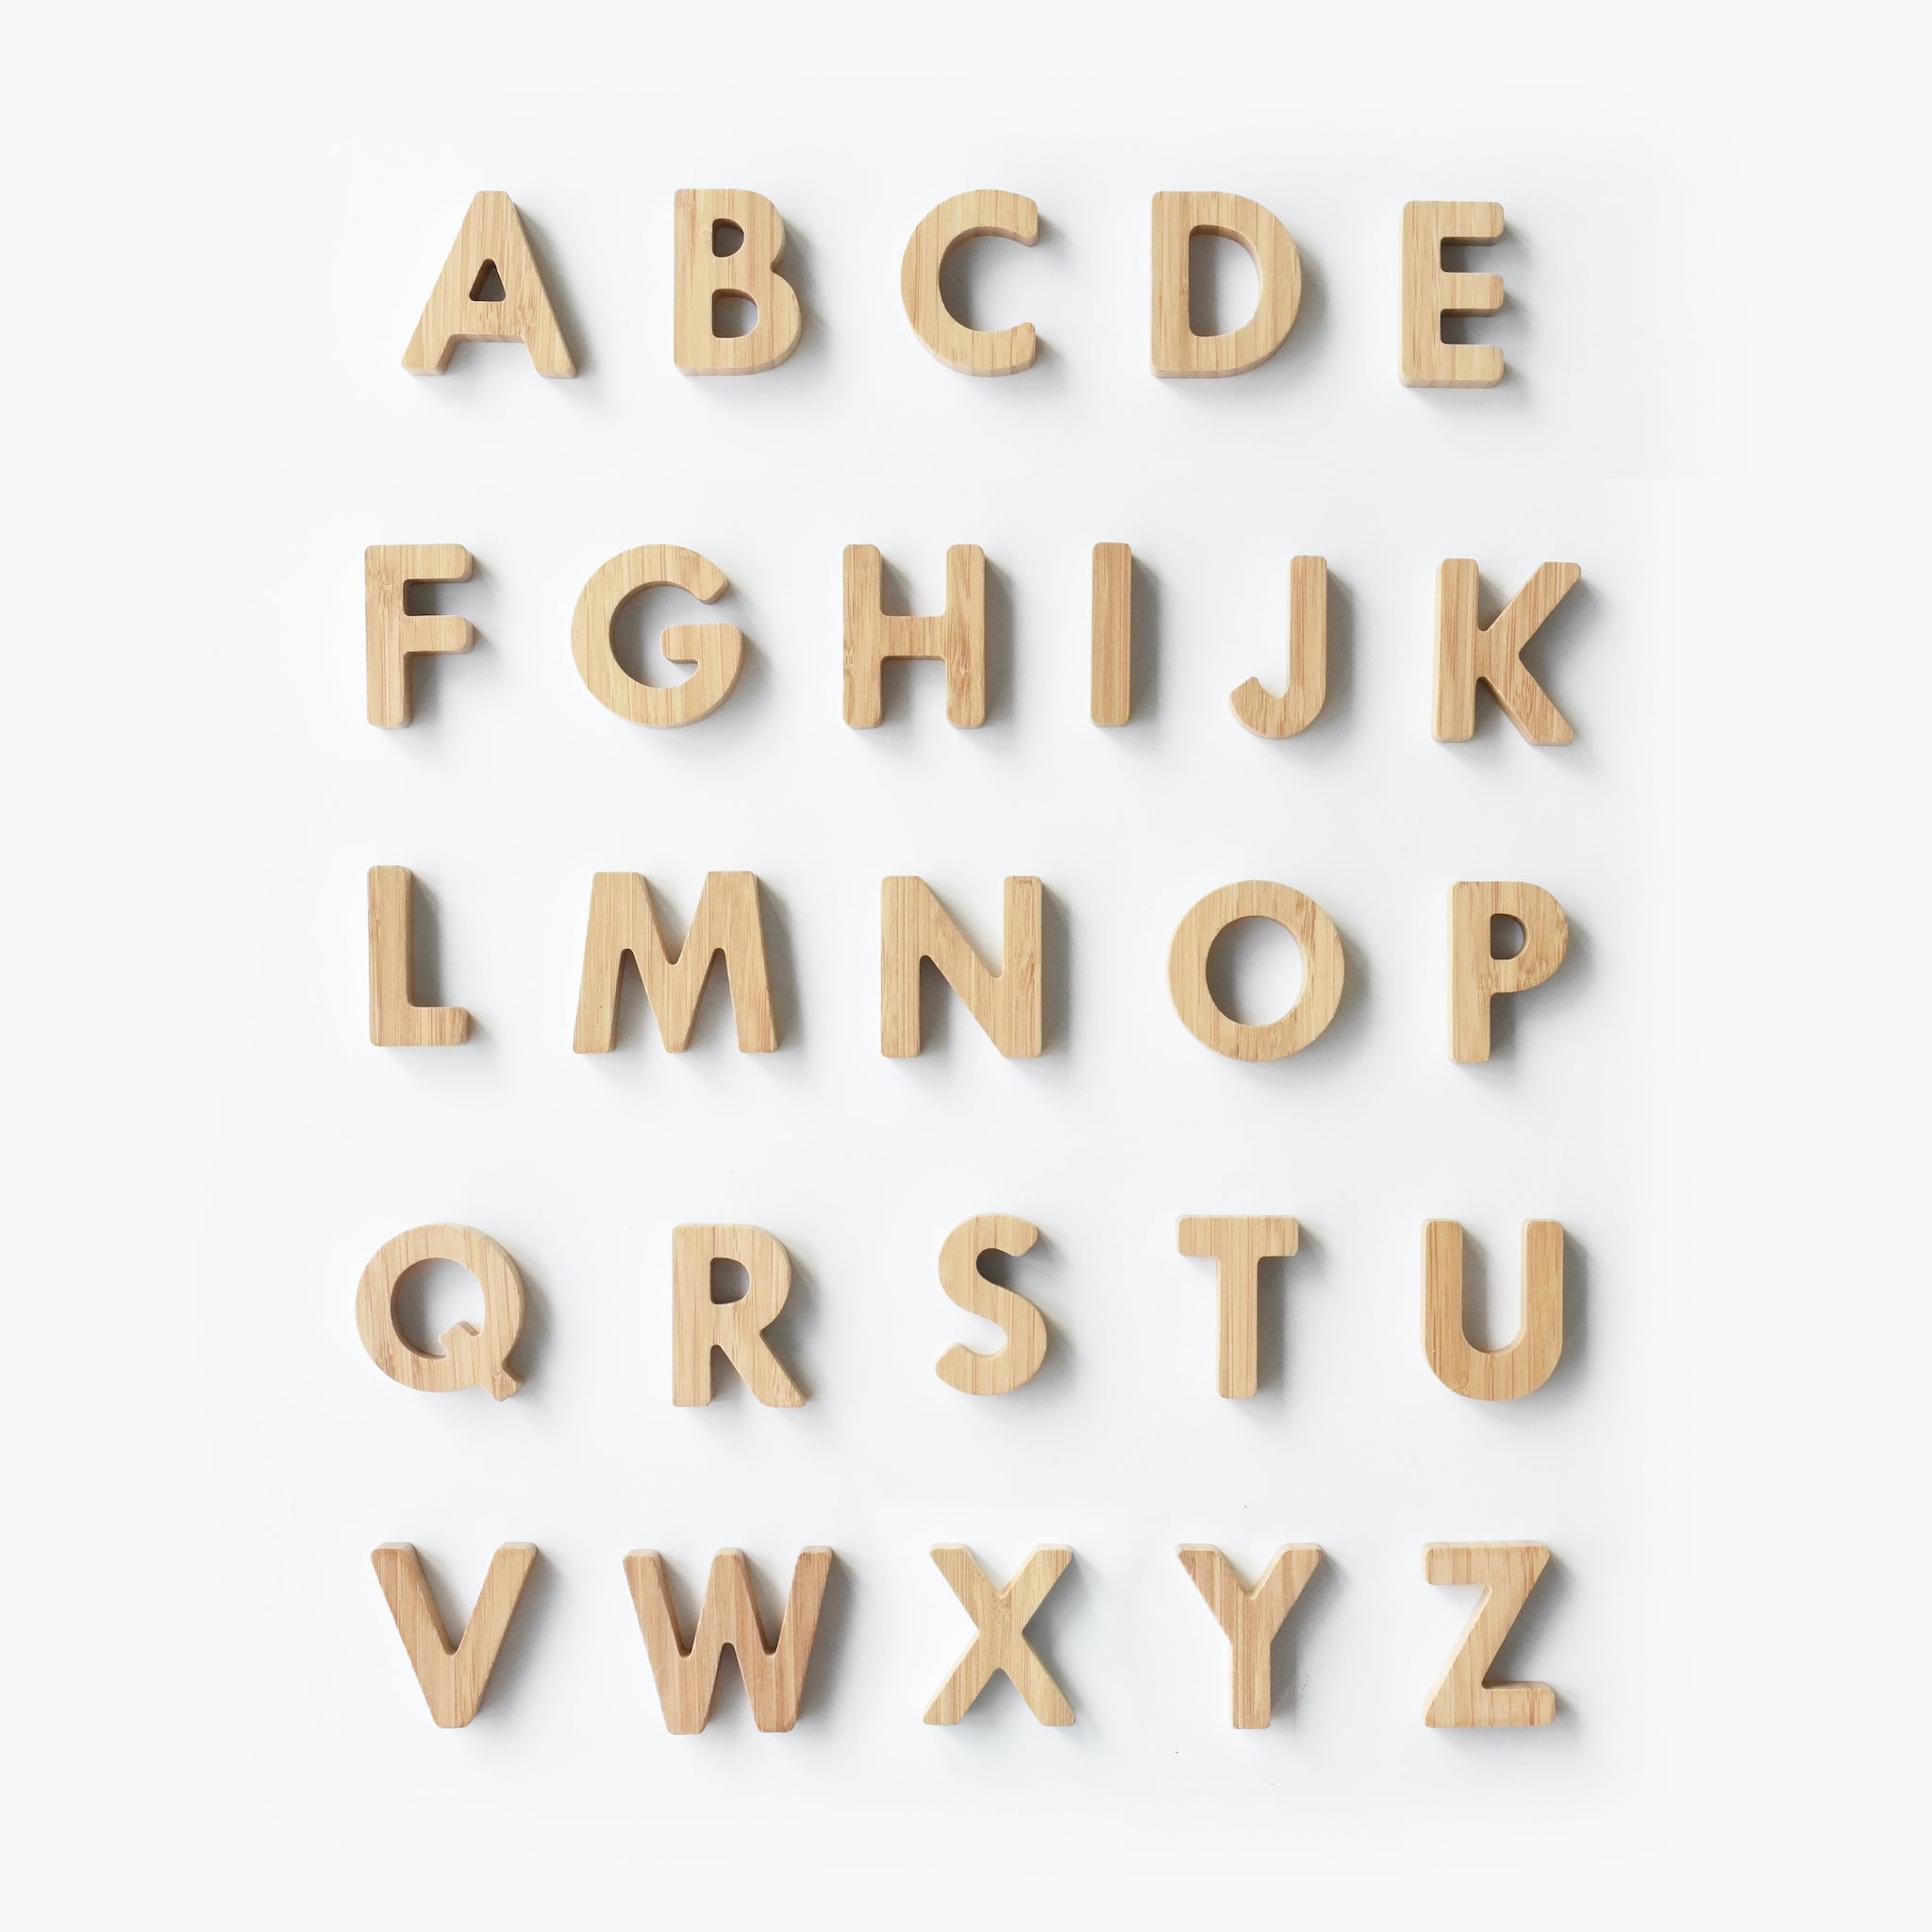 bamboo-wooden-alphabet-letter-learning-spelling-3.jpg